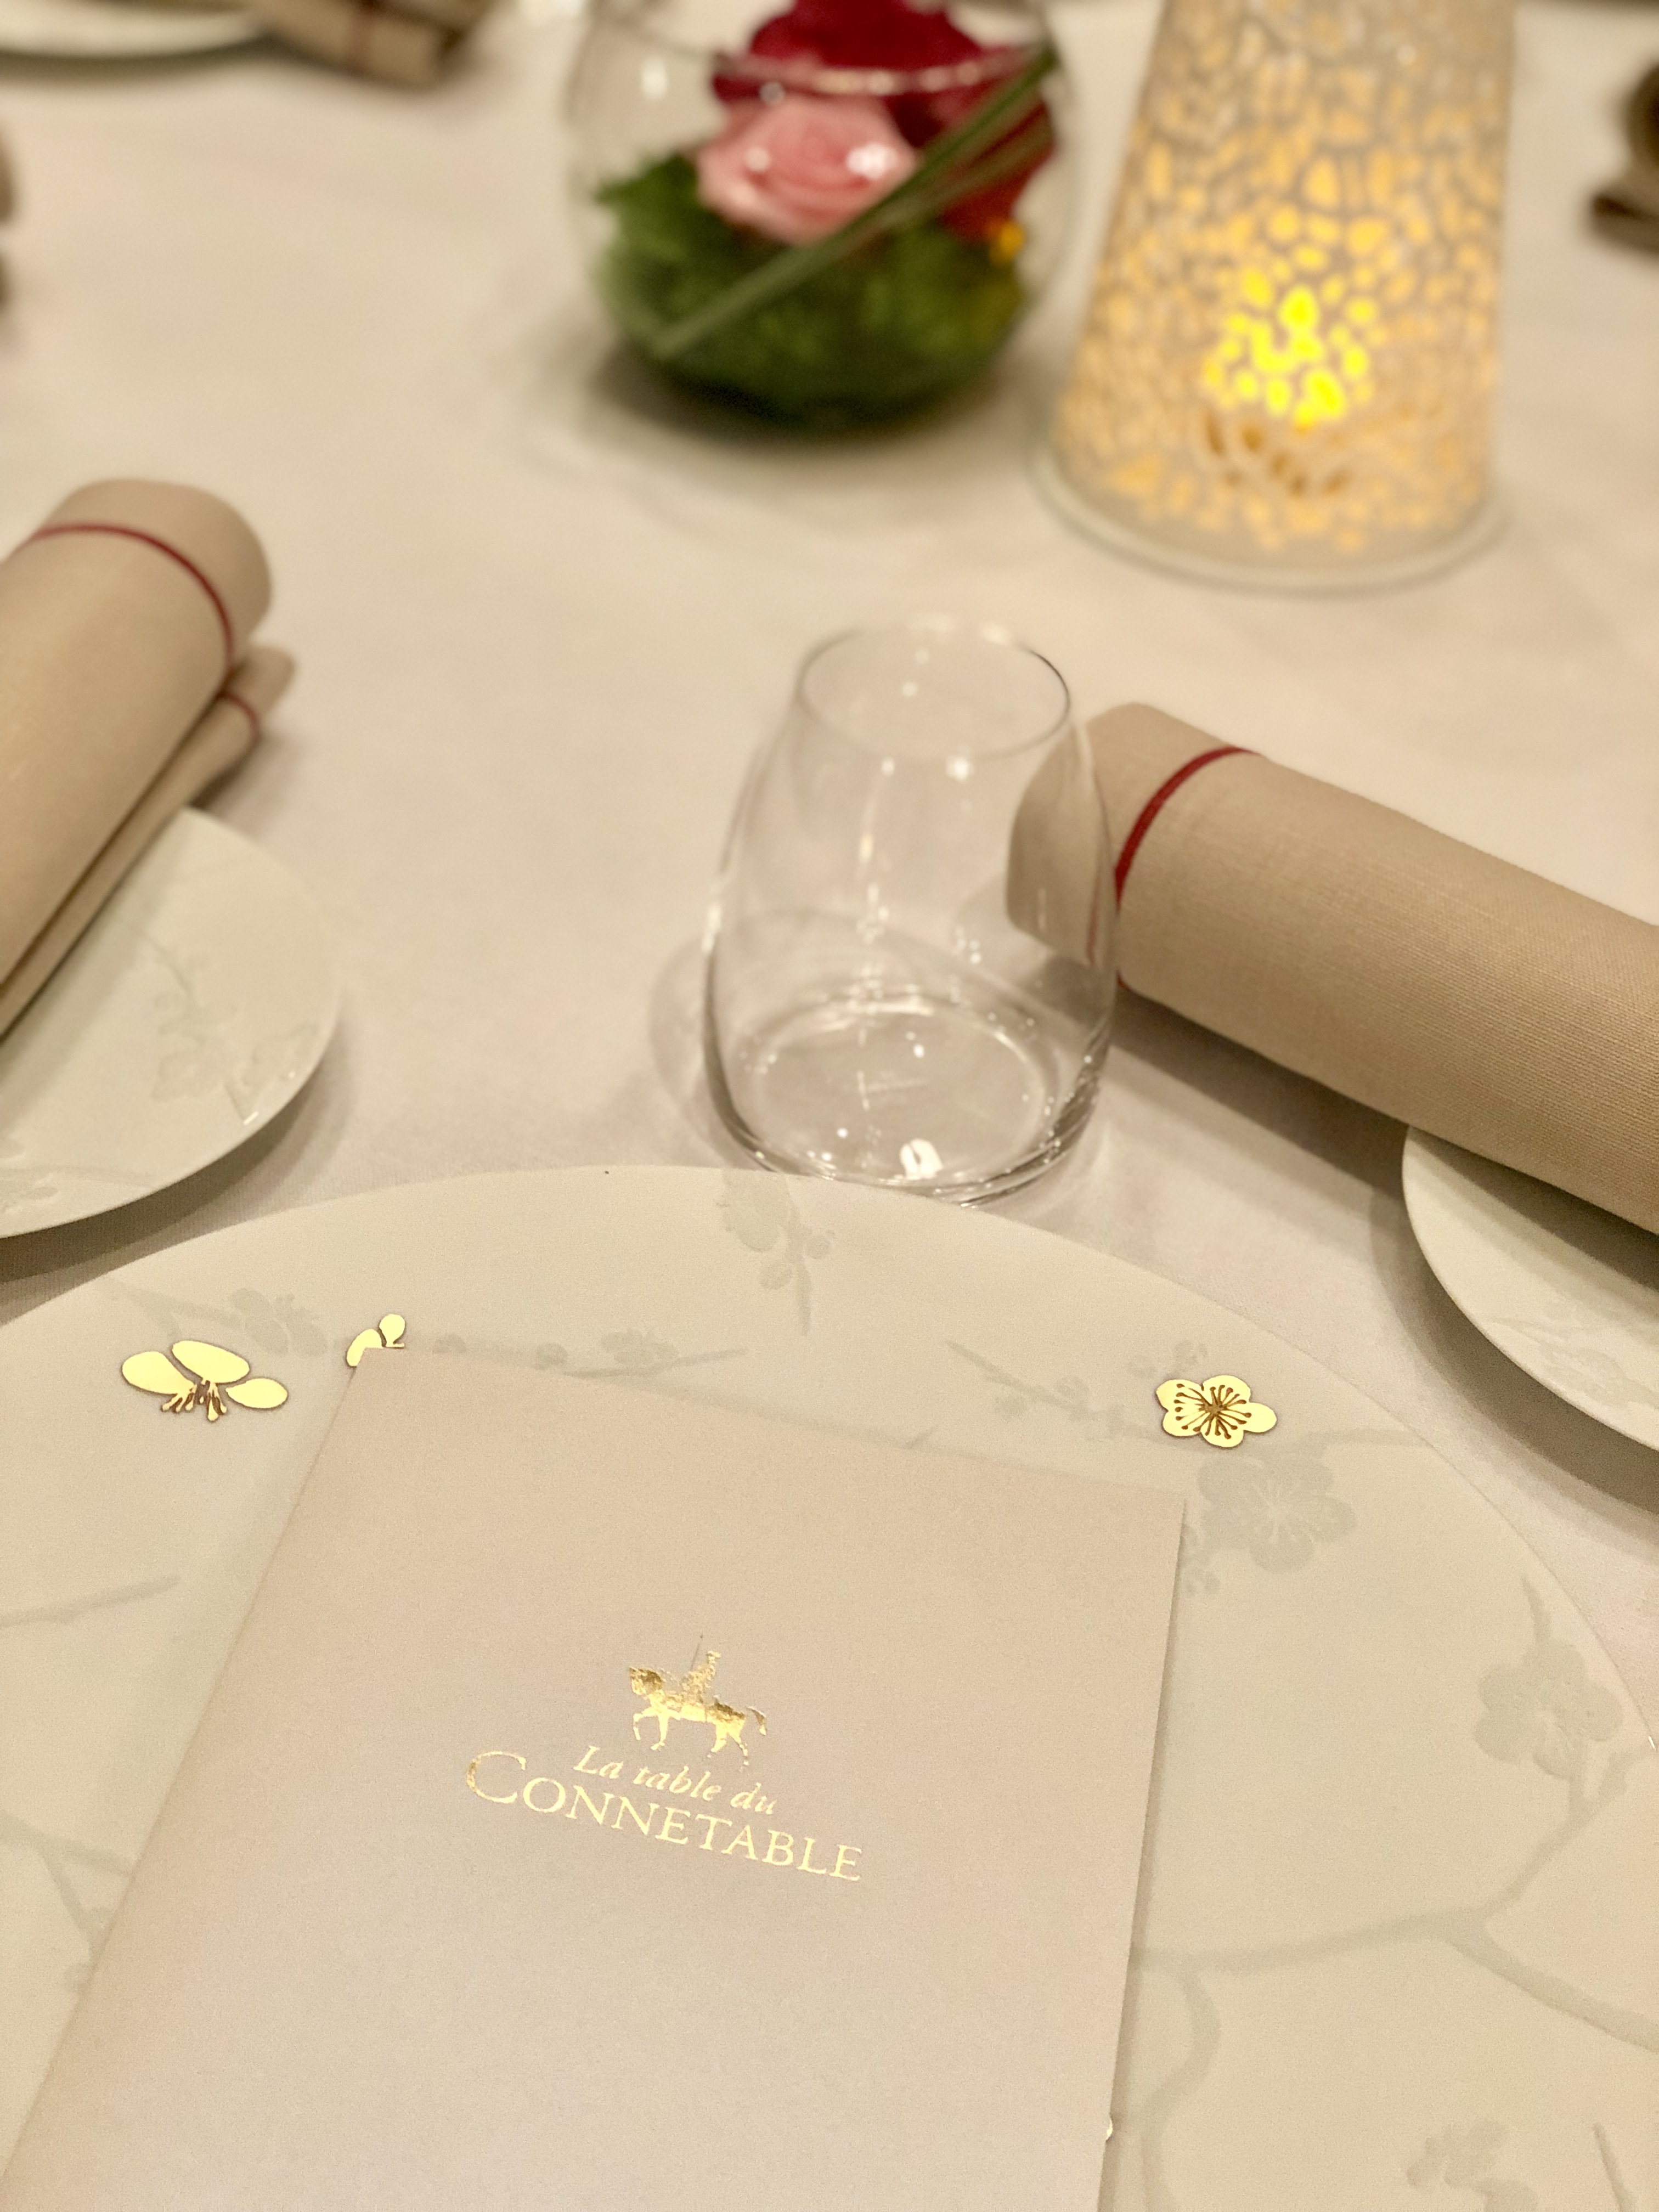 la table du connetable - chantilly - restaurant - gastronomique - 1 étoile michelin - julien lucas